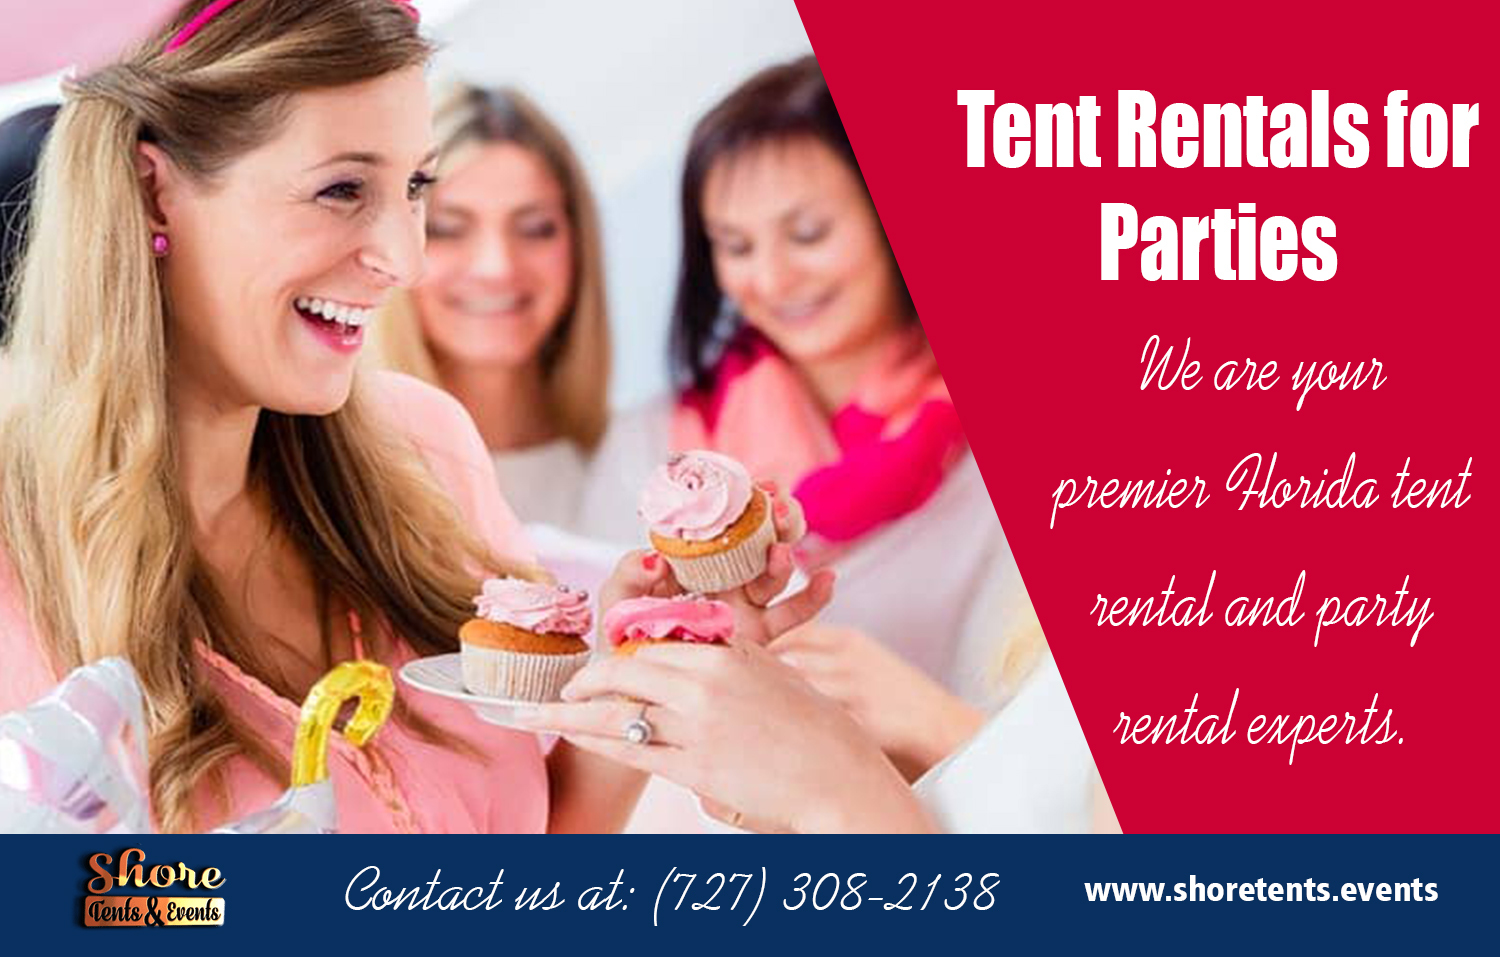 Tent Rentals for Parties